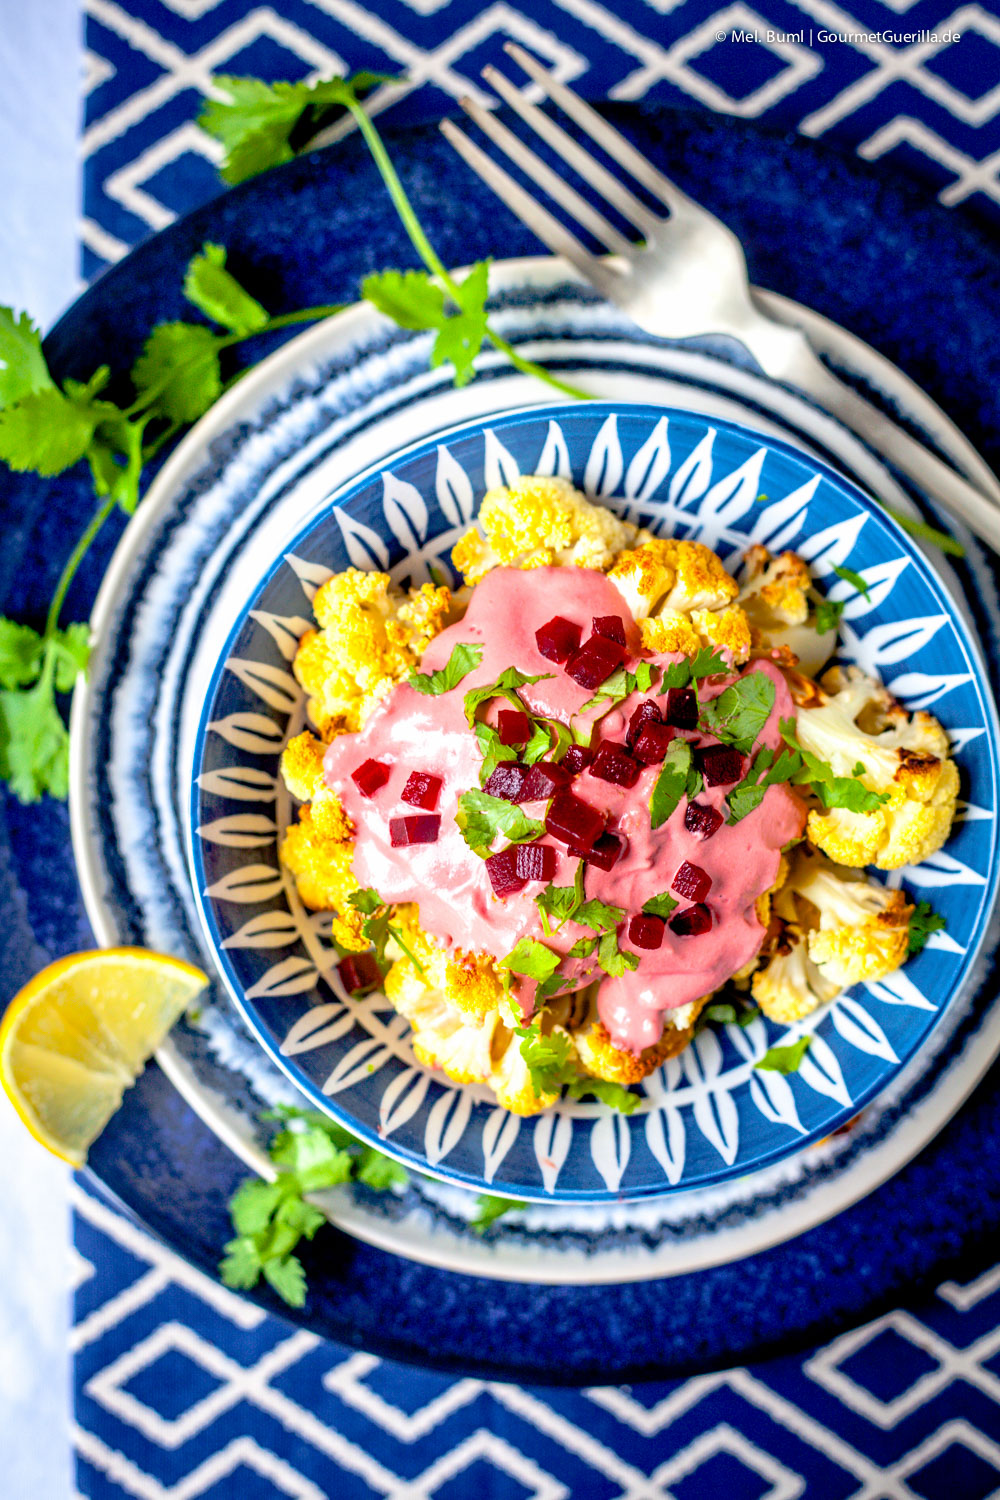 Im Ofen gebackener Blumenkohl mit Pretty Pink Tahina Sauce | GourmetGuerilla.de